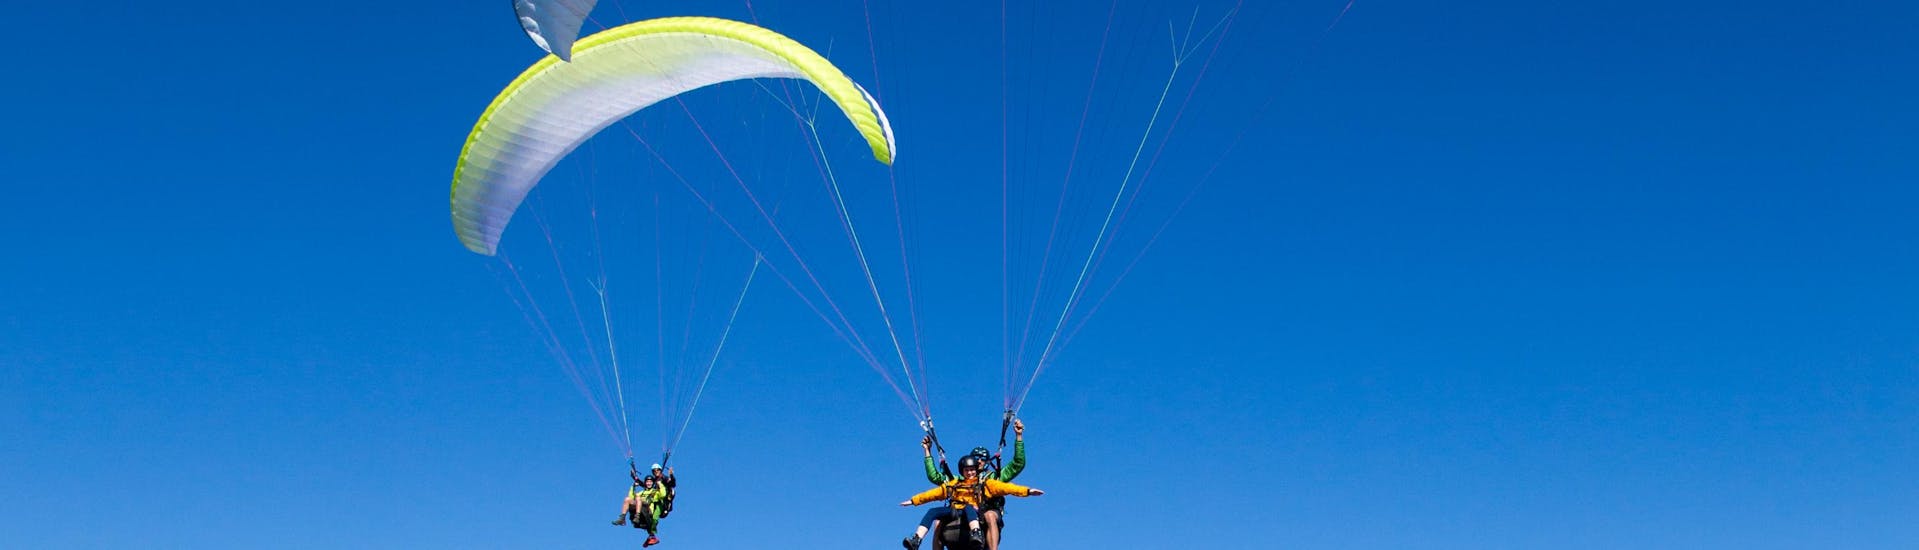 Guide und Teilnehmer sind in der Luft beim Tandem Paragliding vom Bischling in Werfenweng - Premium mit FlyTandem Salzburg.